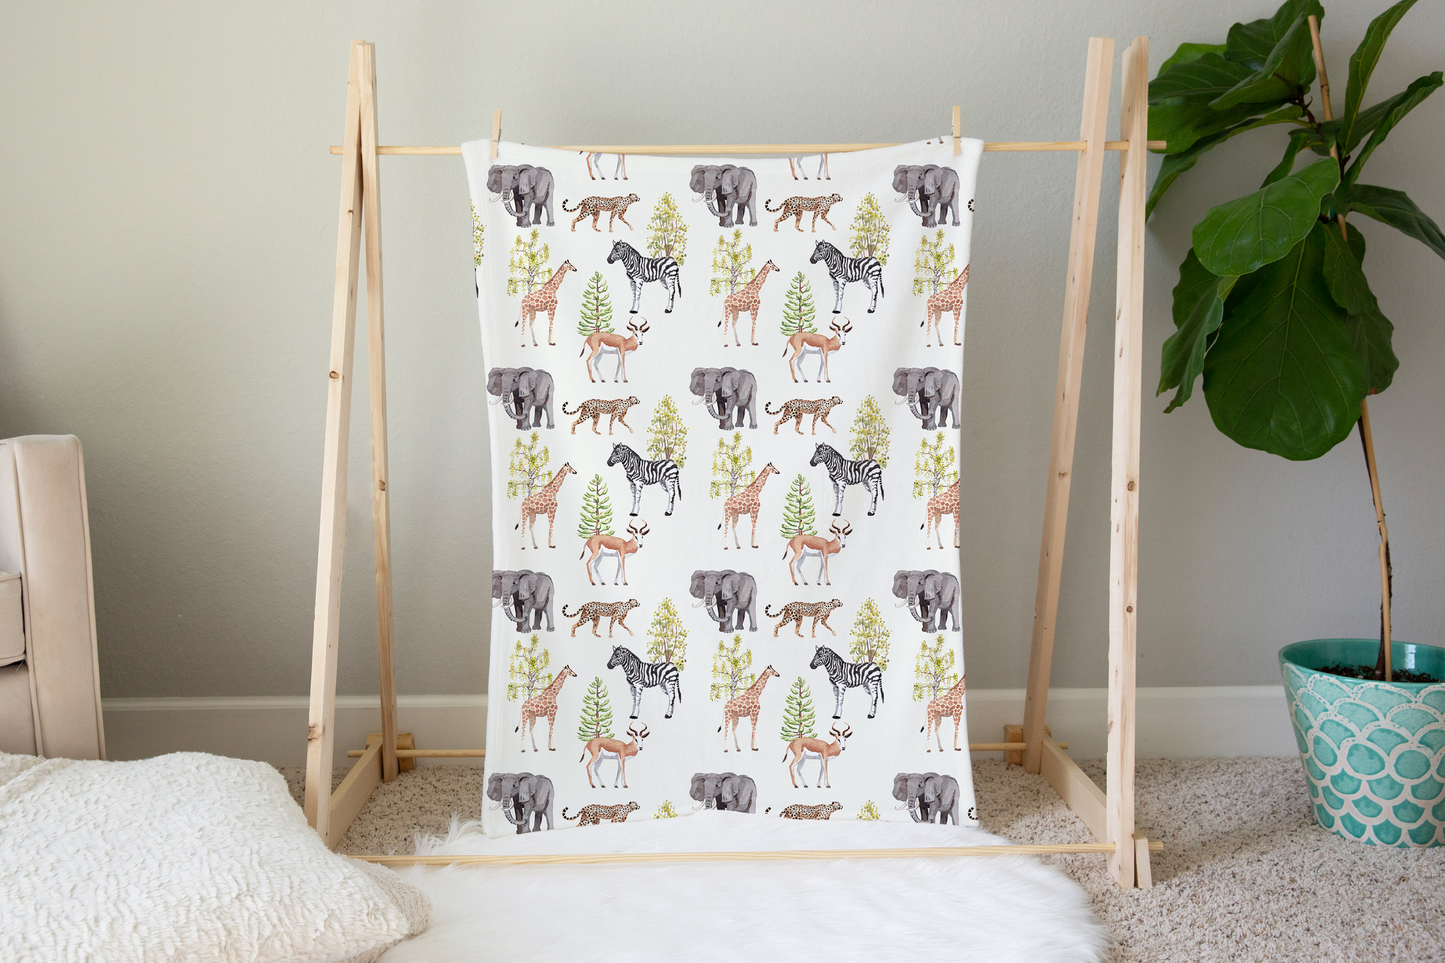 Savanna Animals Minky Blanket, Safari Nursery Bedding - Savanna